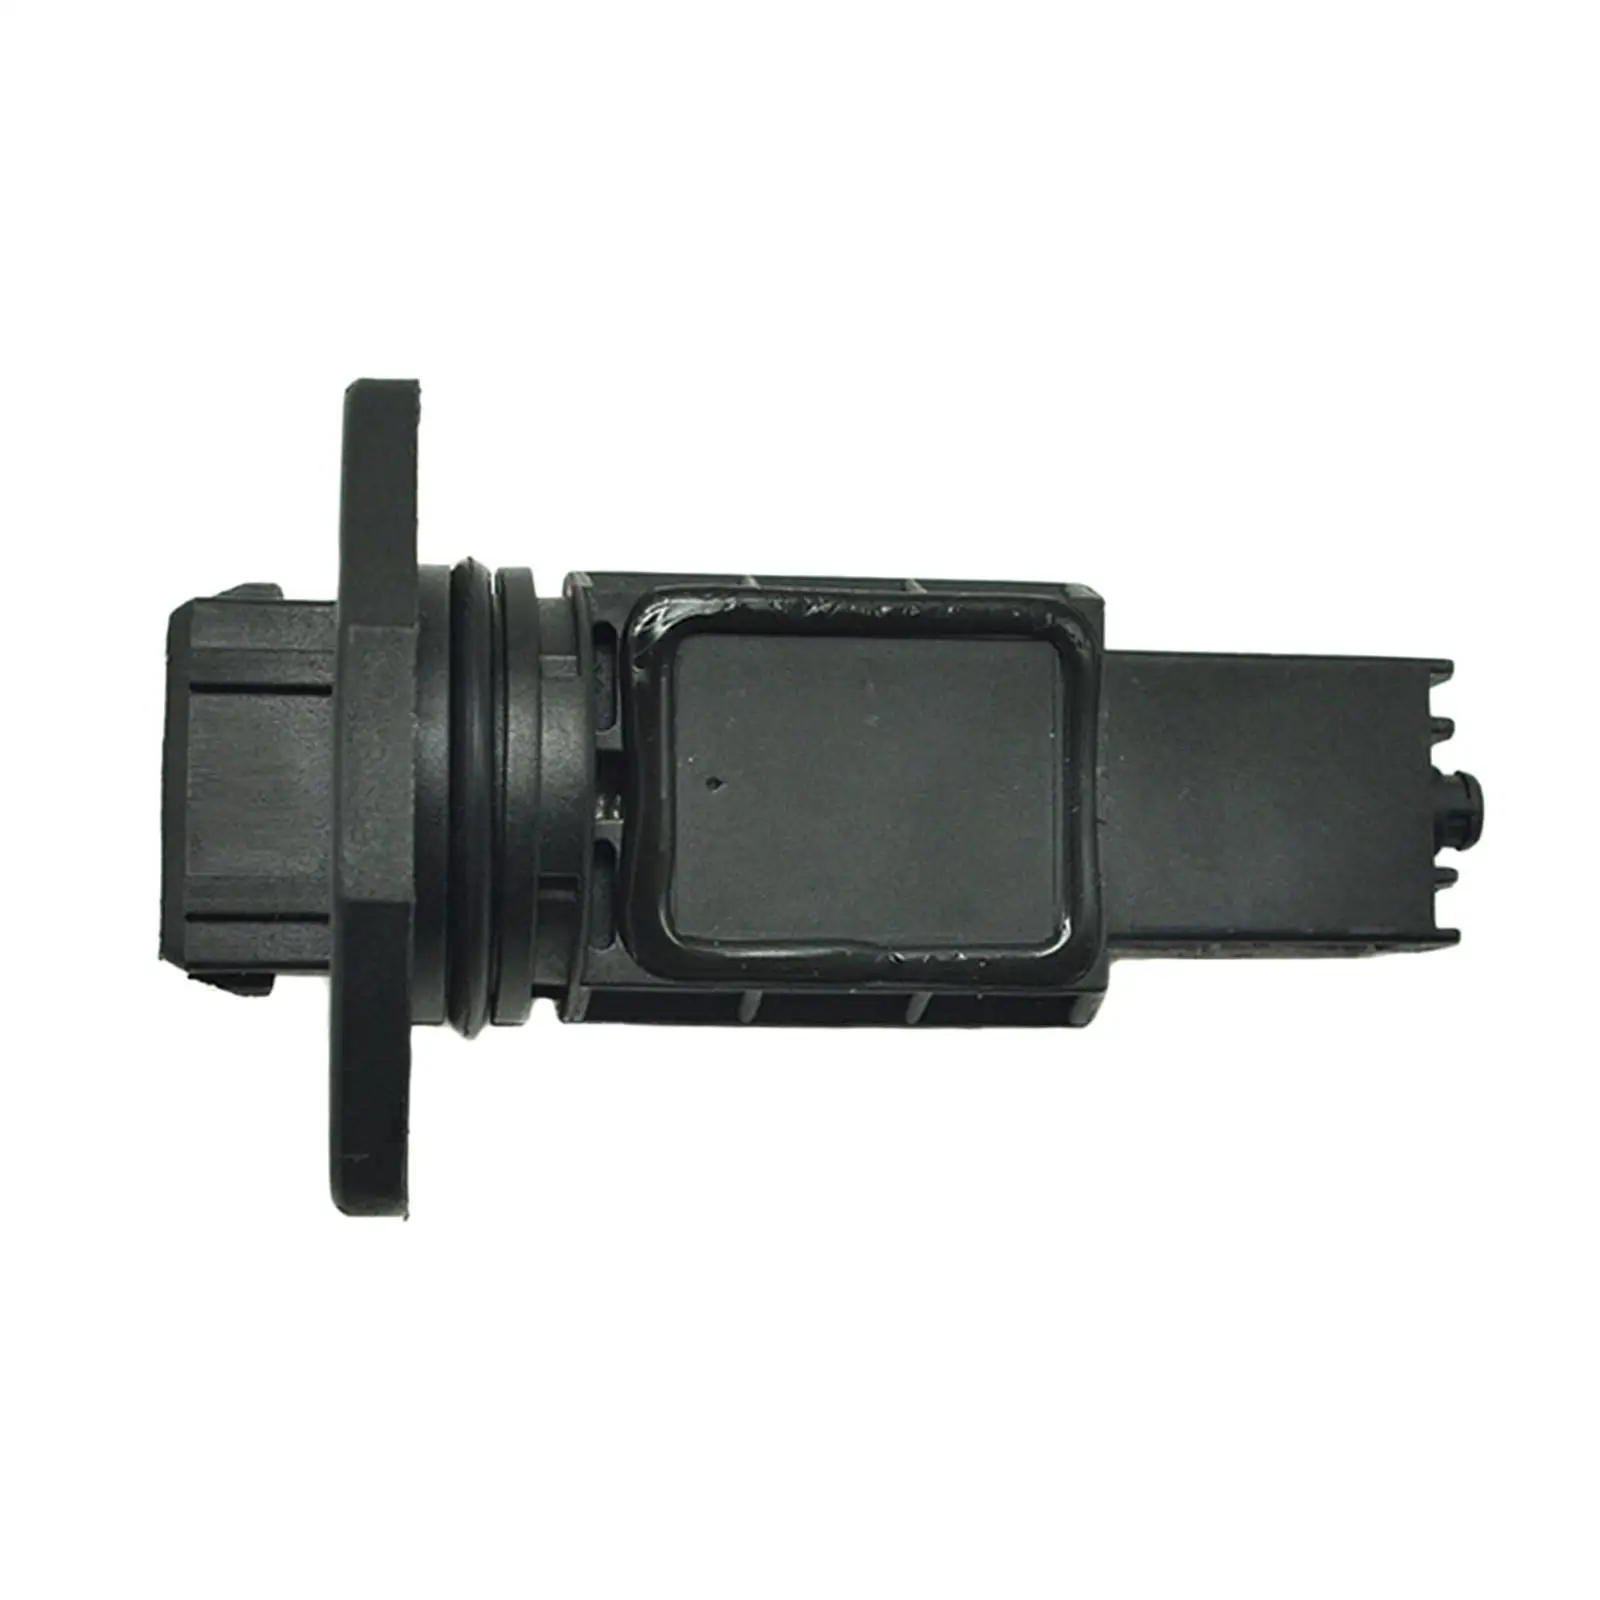 Mass Air Flow Sensor Car Supplies Replacement Parts Plastic Vehicle Parts Black Maf, for Audi A8 0280217804, 077133471D